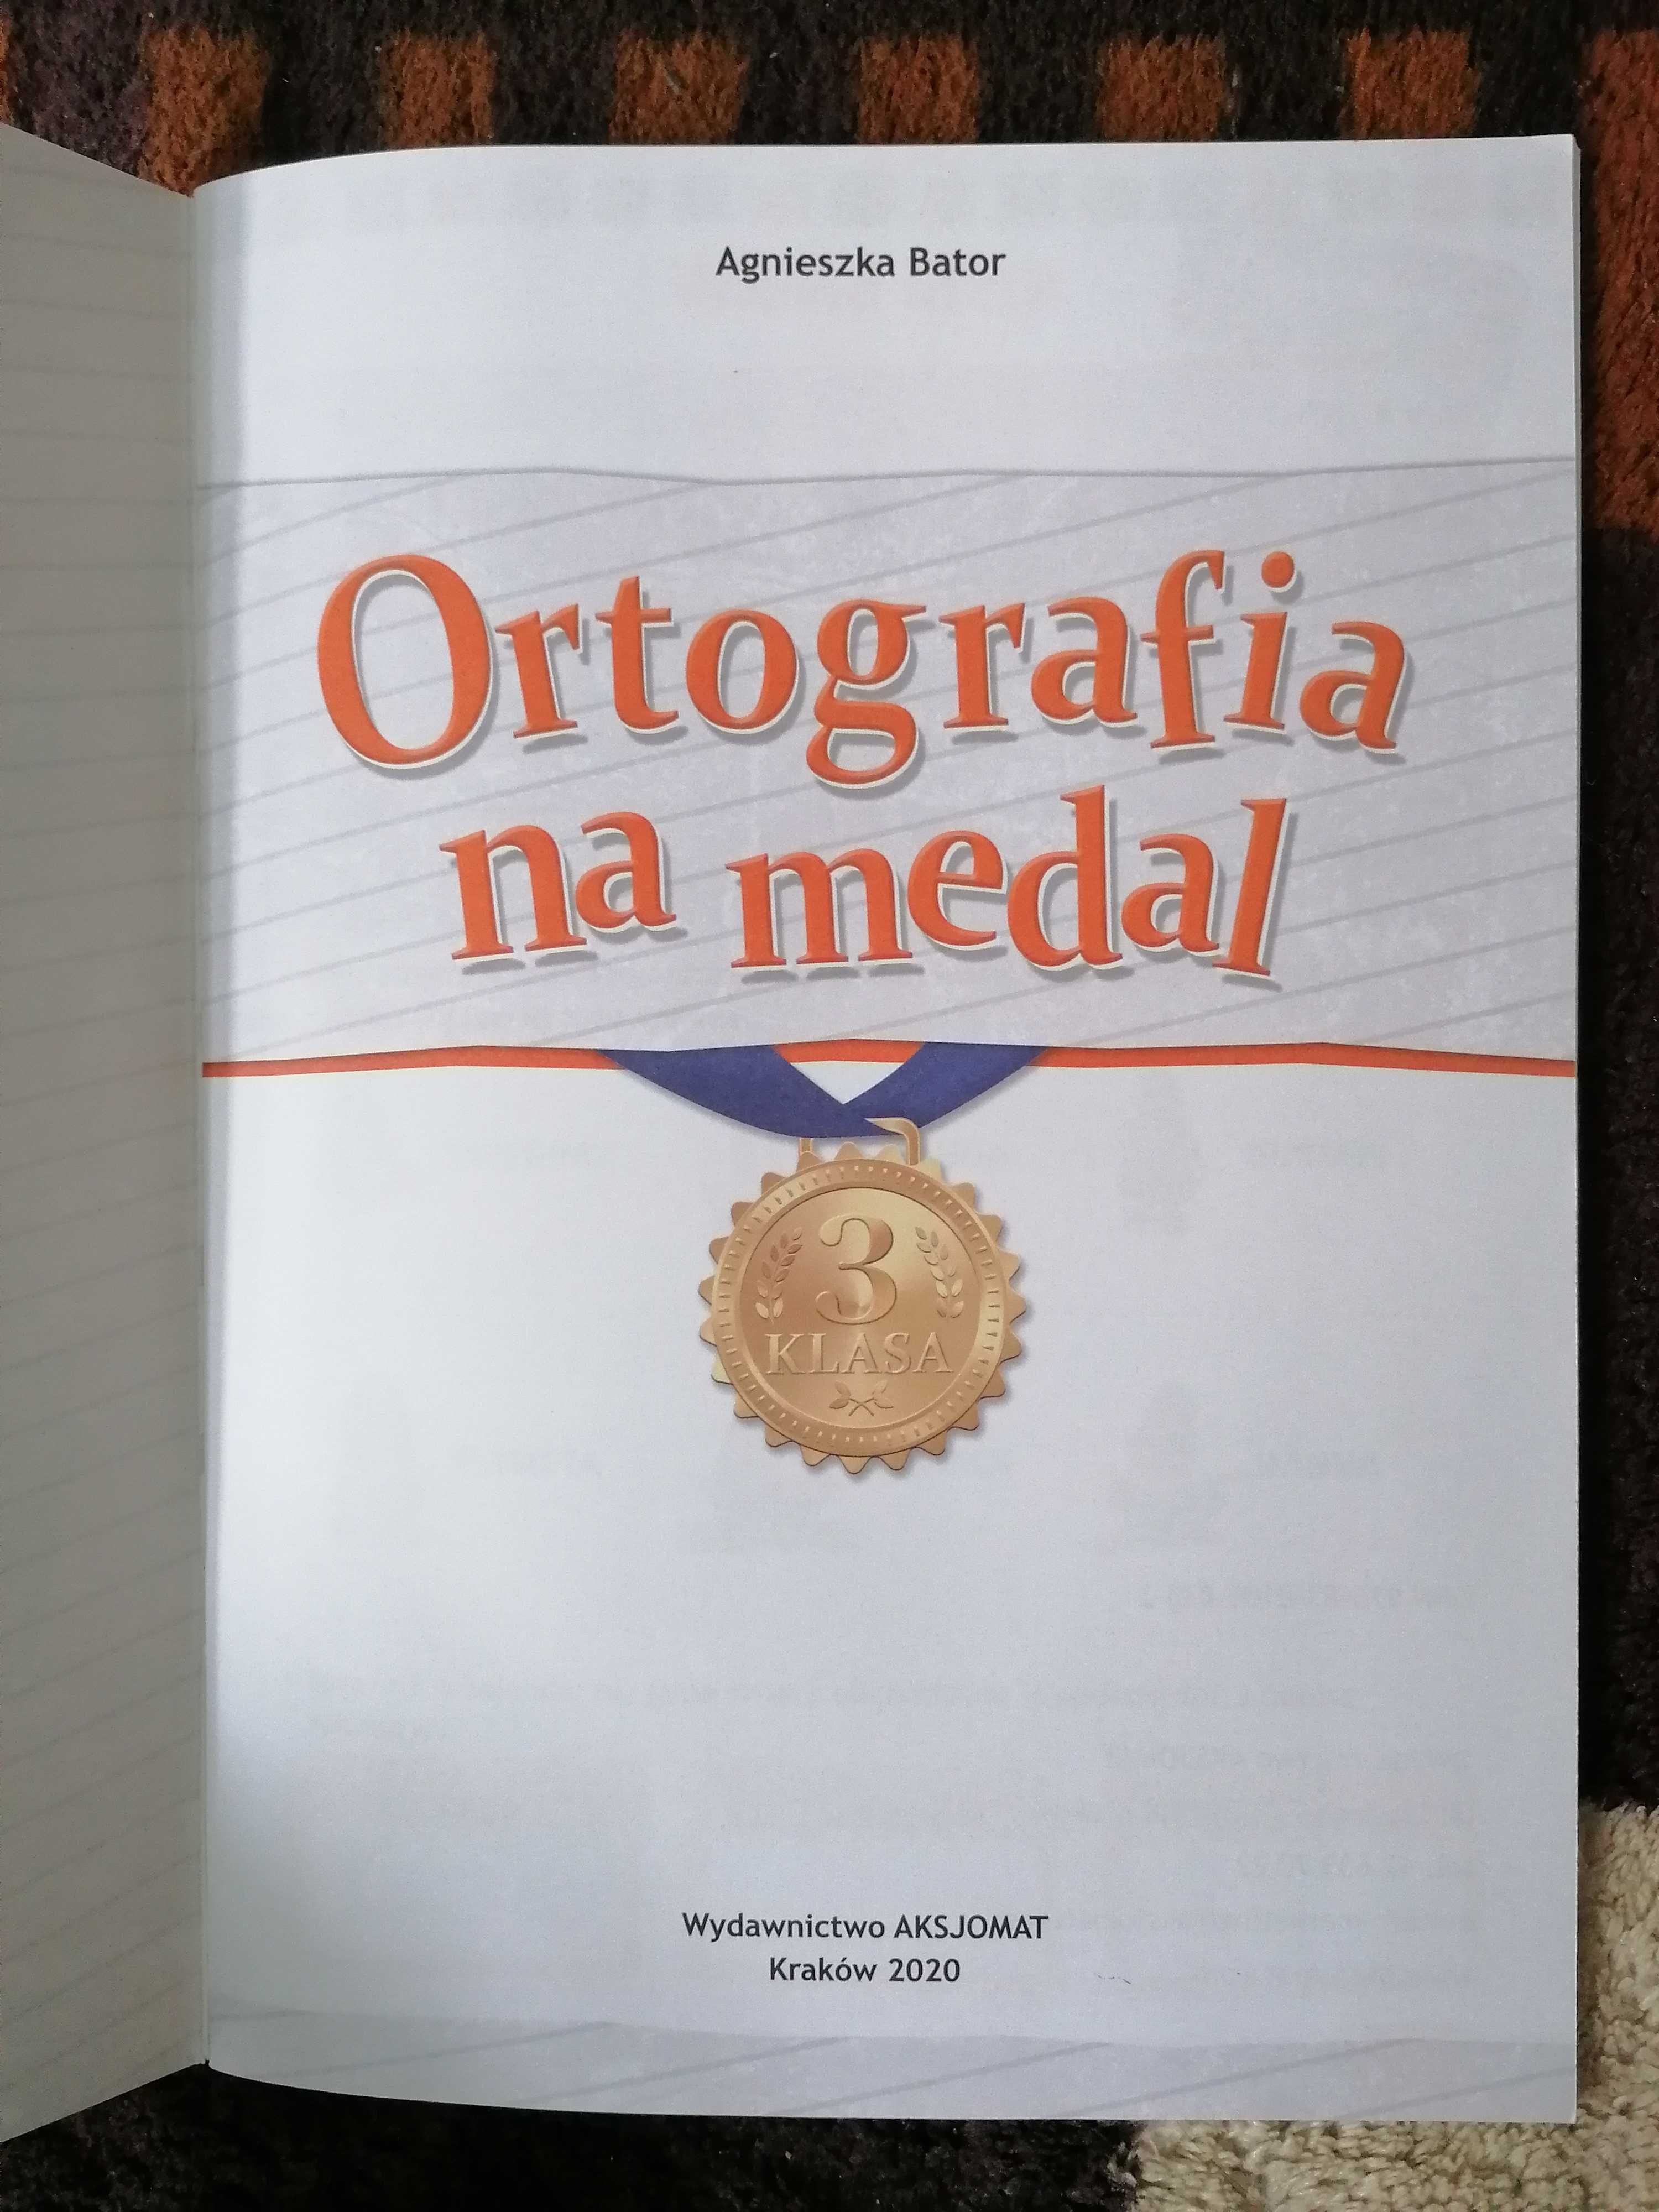 "Ortografia na medal" Nowy Zbiór ćwiczeń ortograficznych - klasa 3